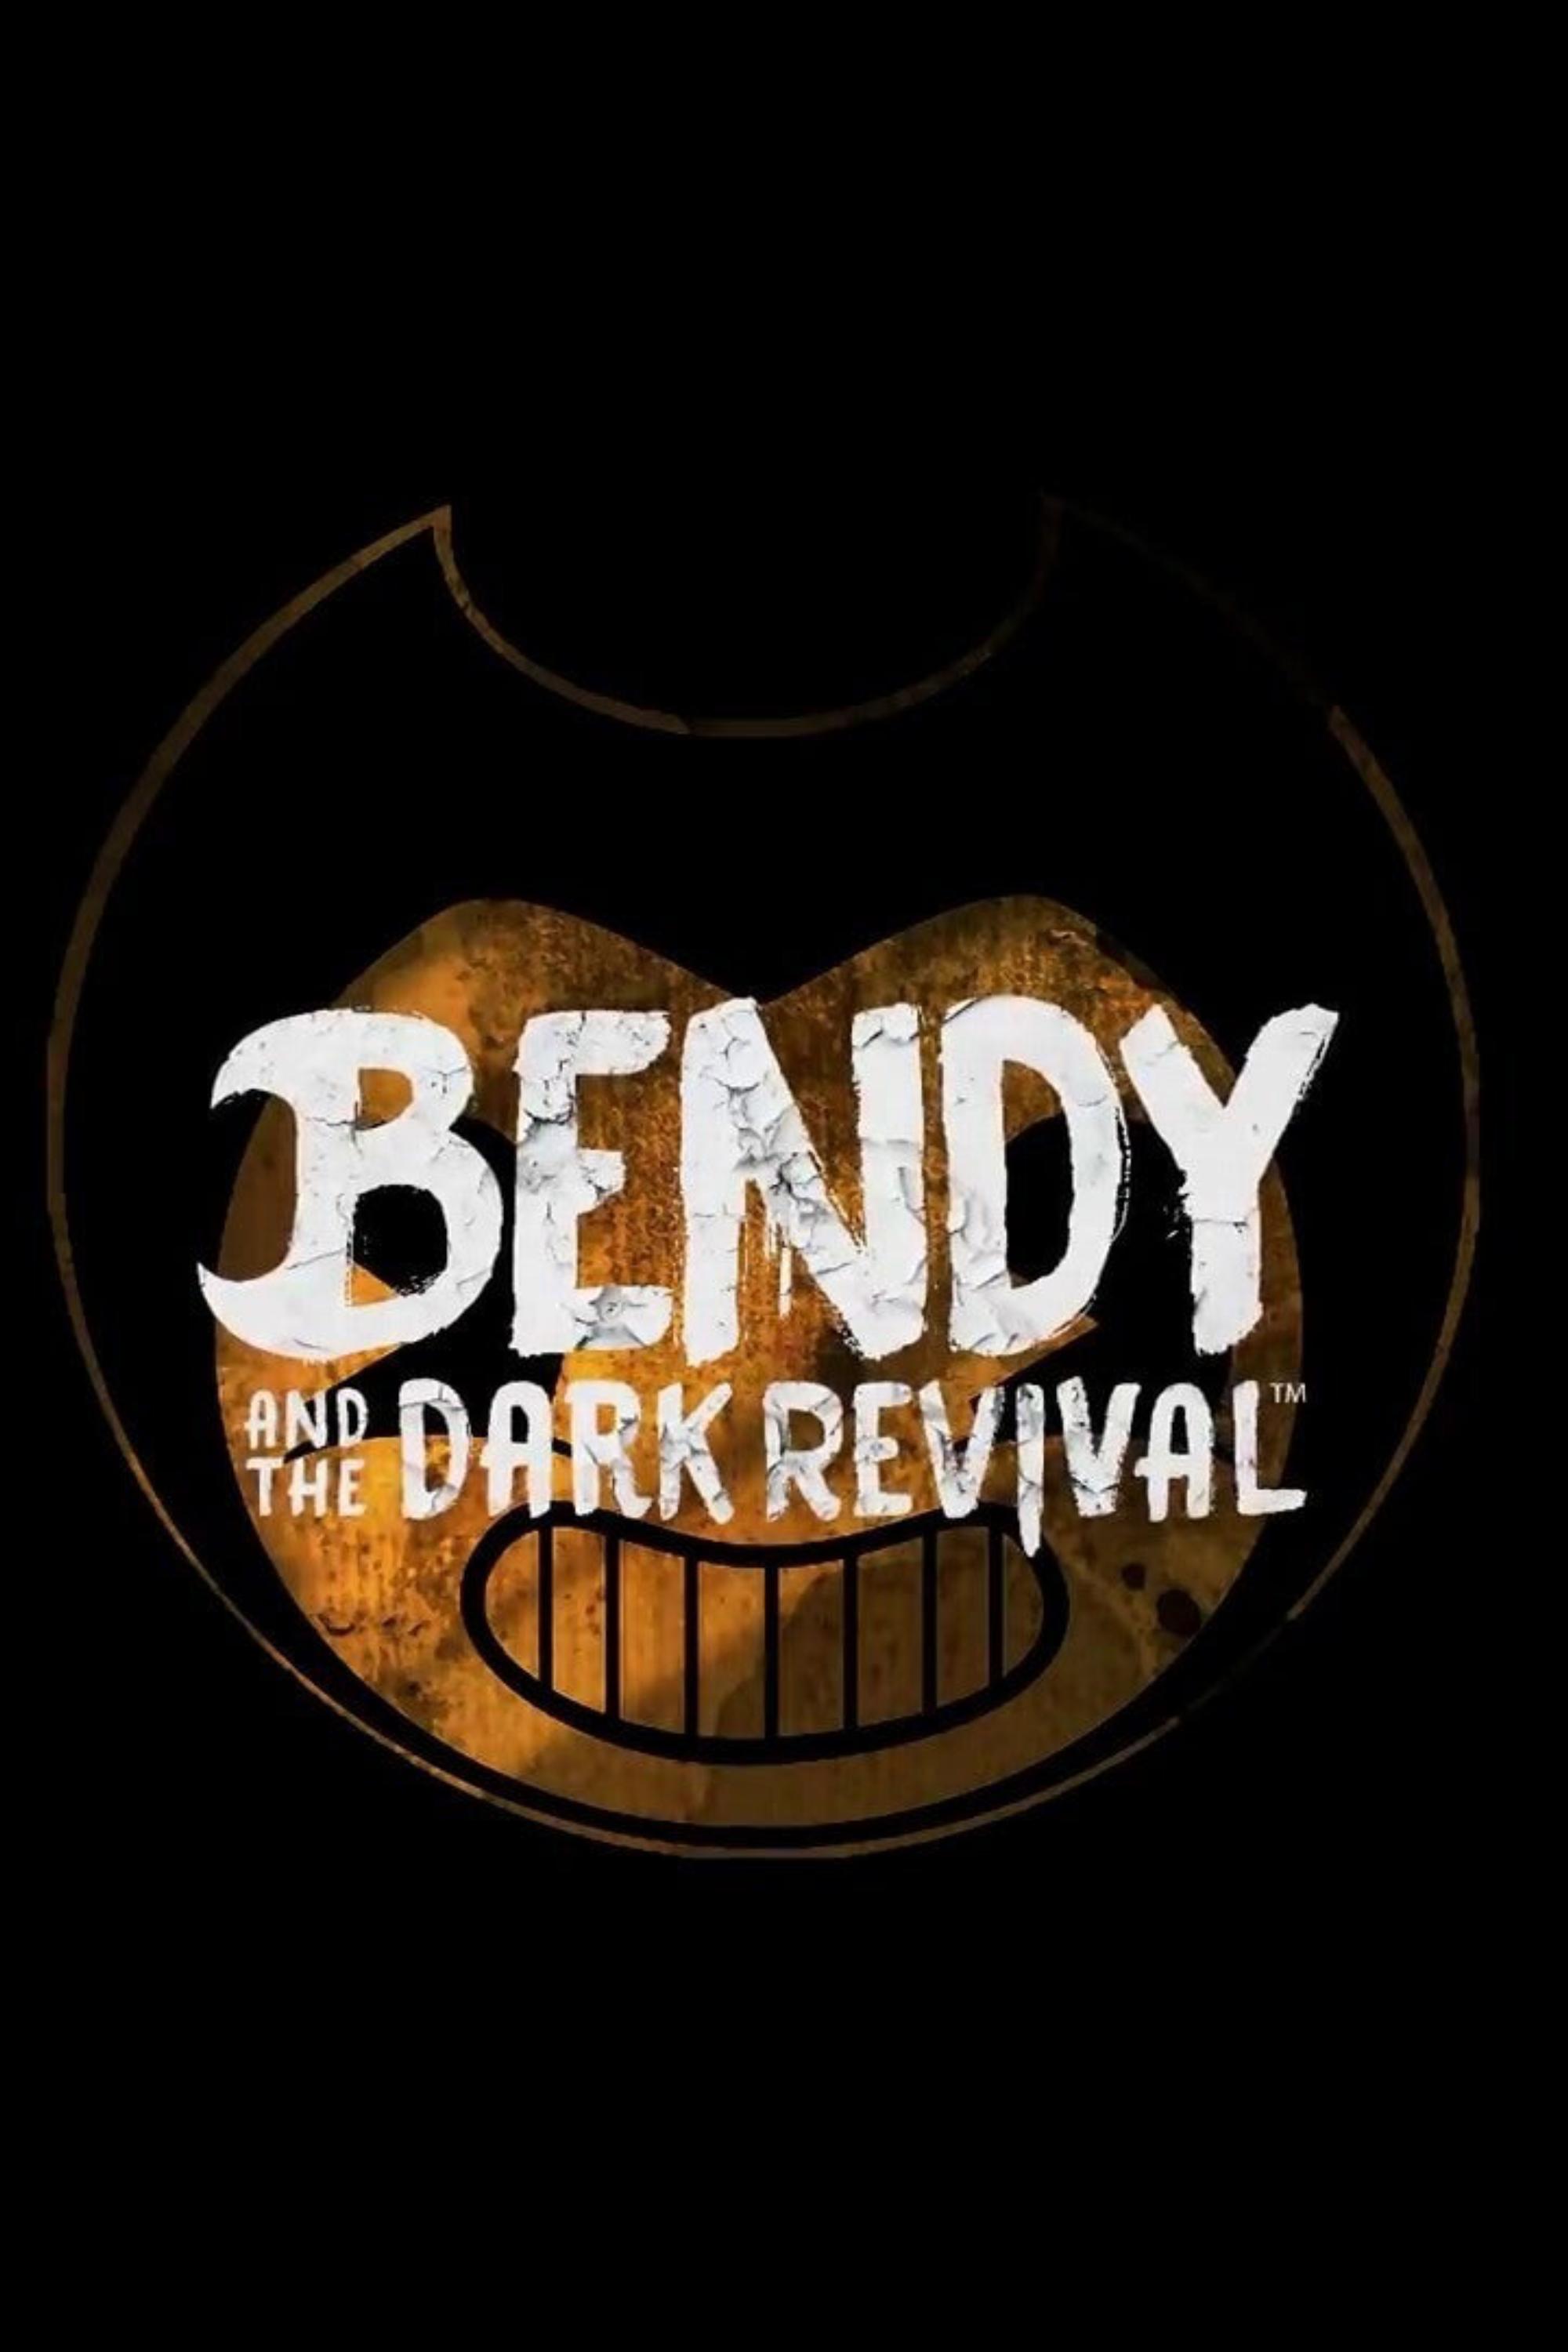 jaquette du jeu vidéo Bendy and the Dark Revival